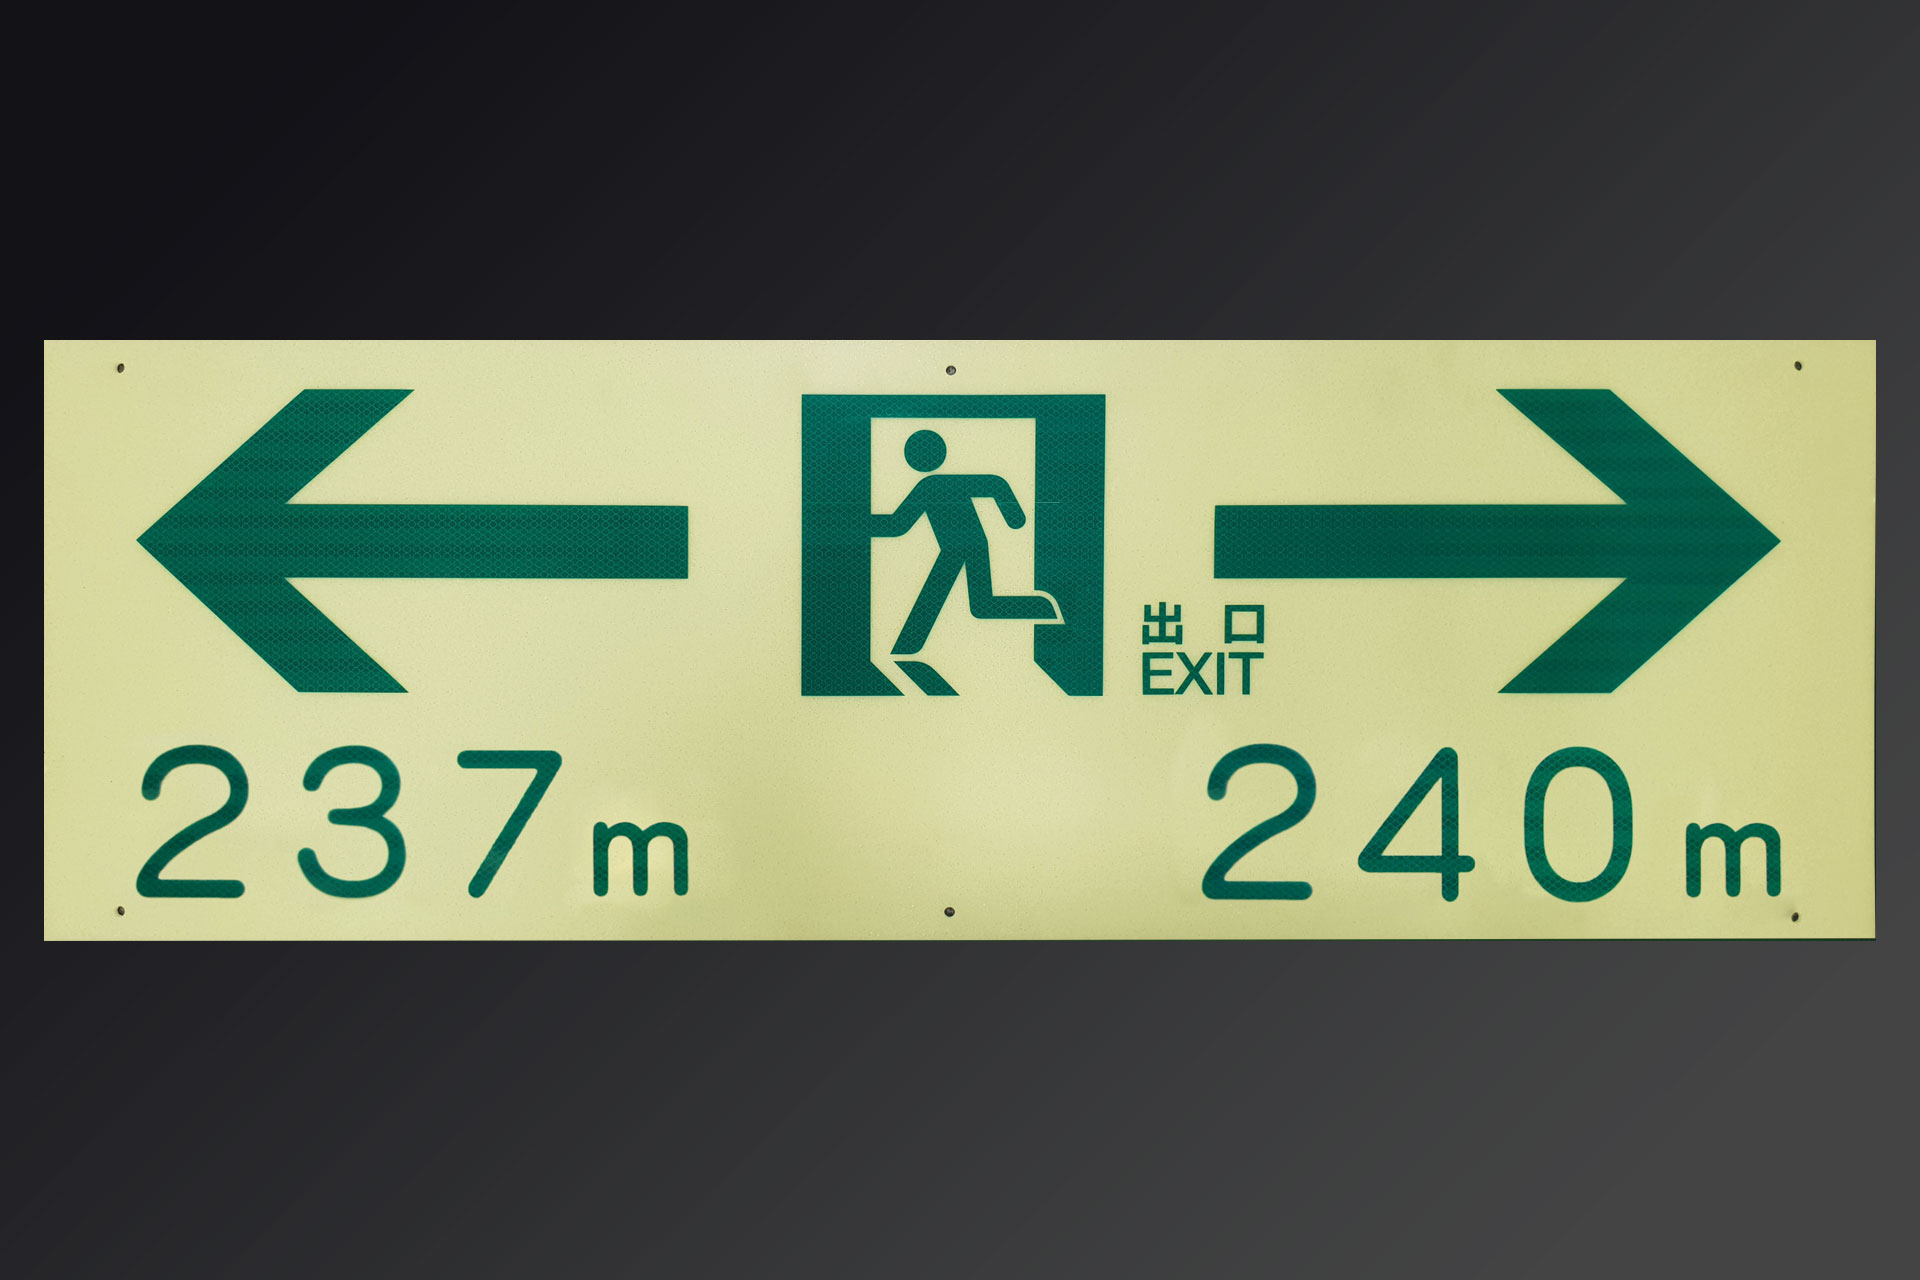 左の出口は237メートル、右の出口は240メートルと表示された明視下のハイブリッドストーン アベイラス リフレクション